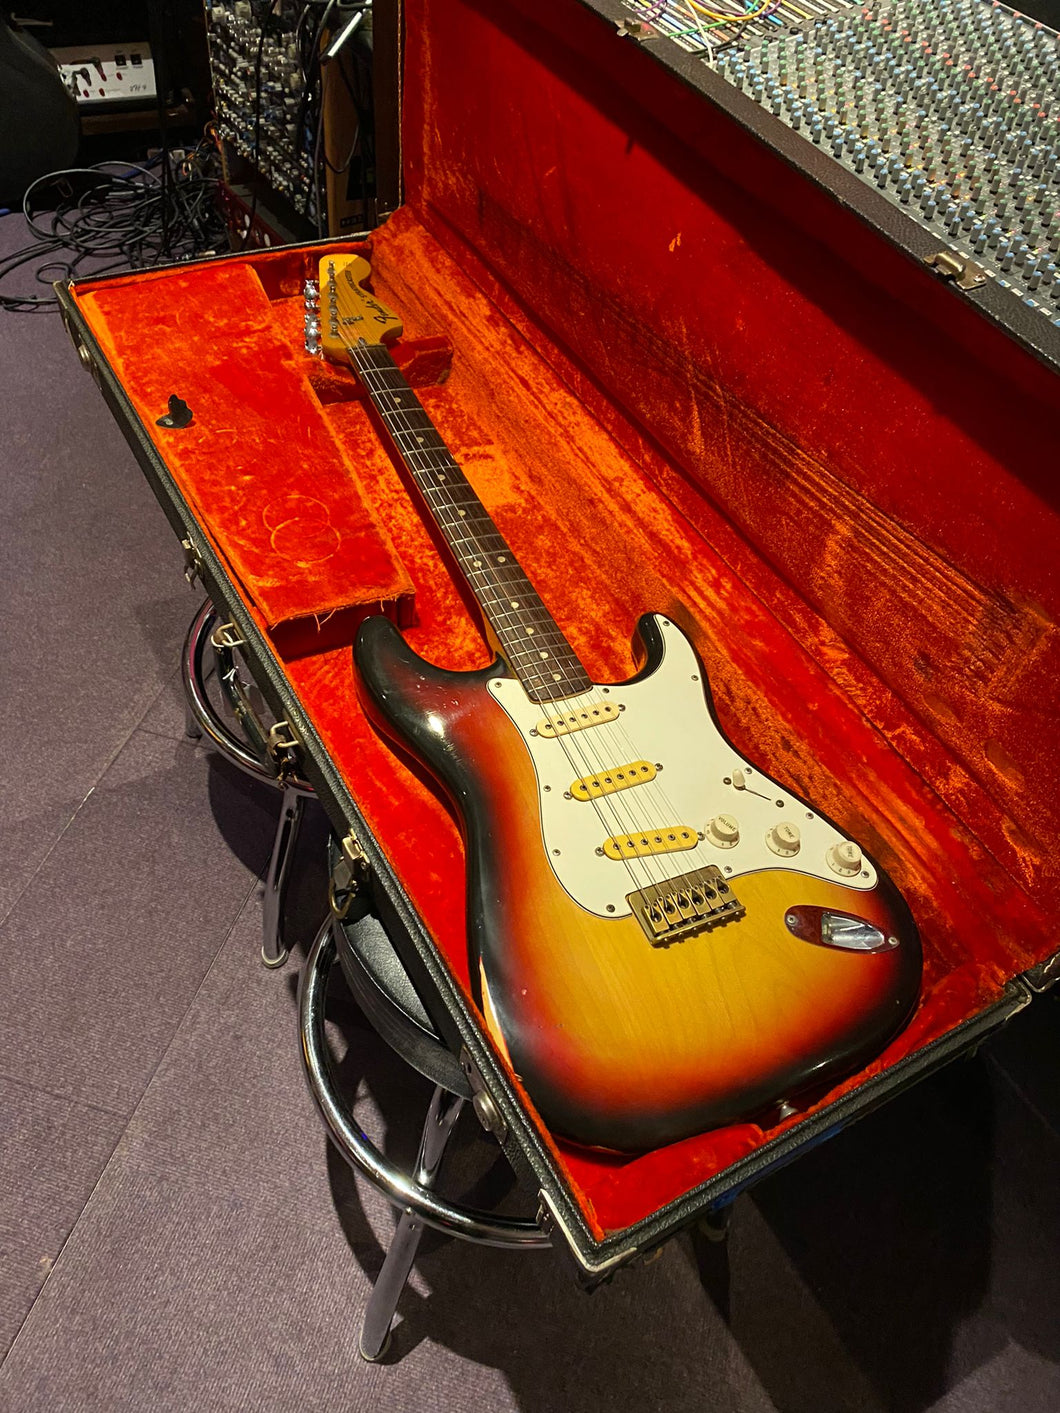 1973 Fender Stratocaster Hardtail Sunburst American Vintage '70s USA Strat Electric Guitar For Sale